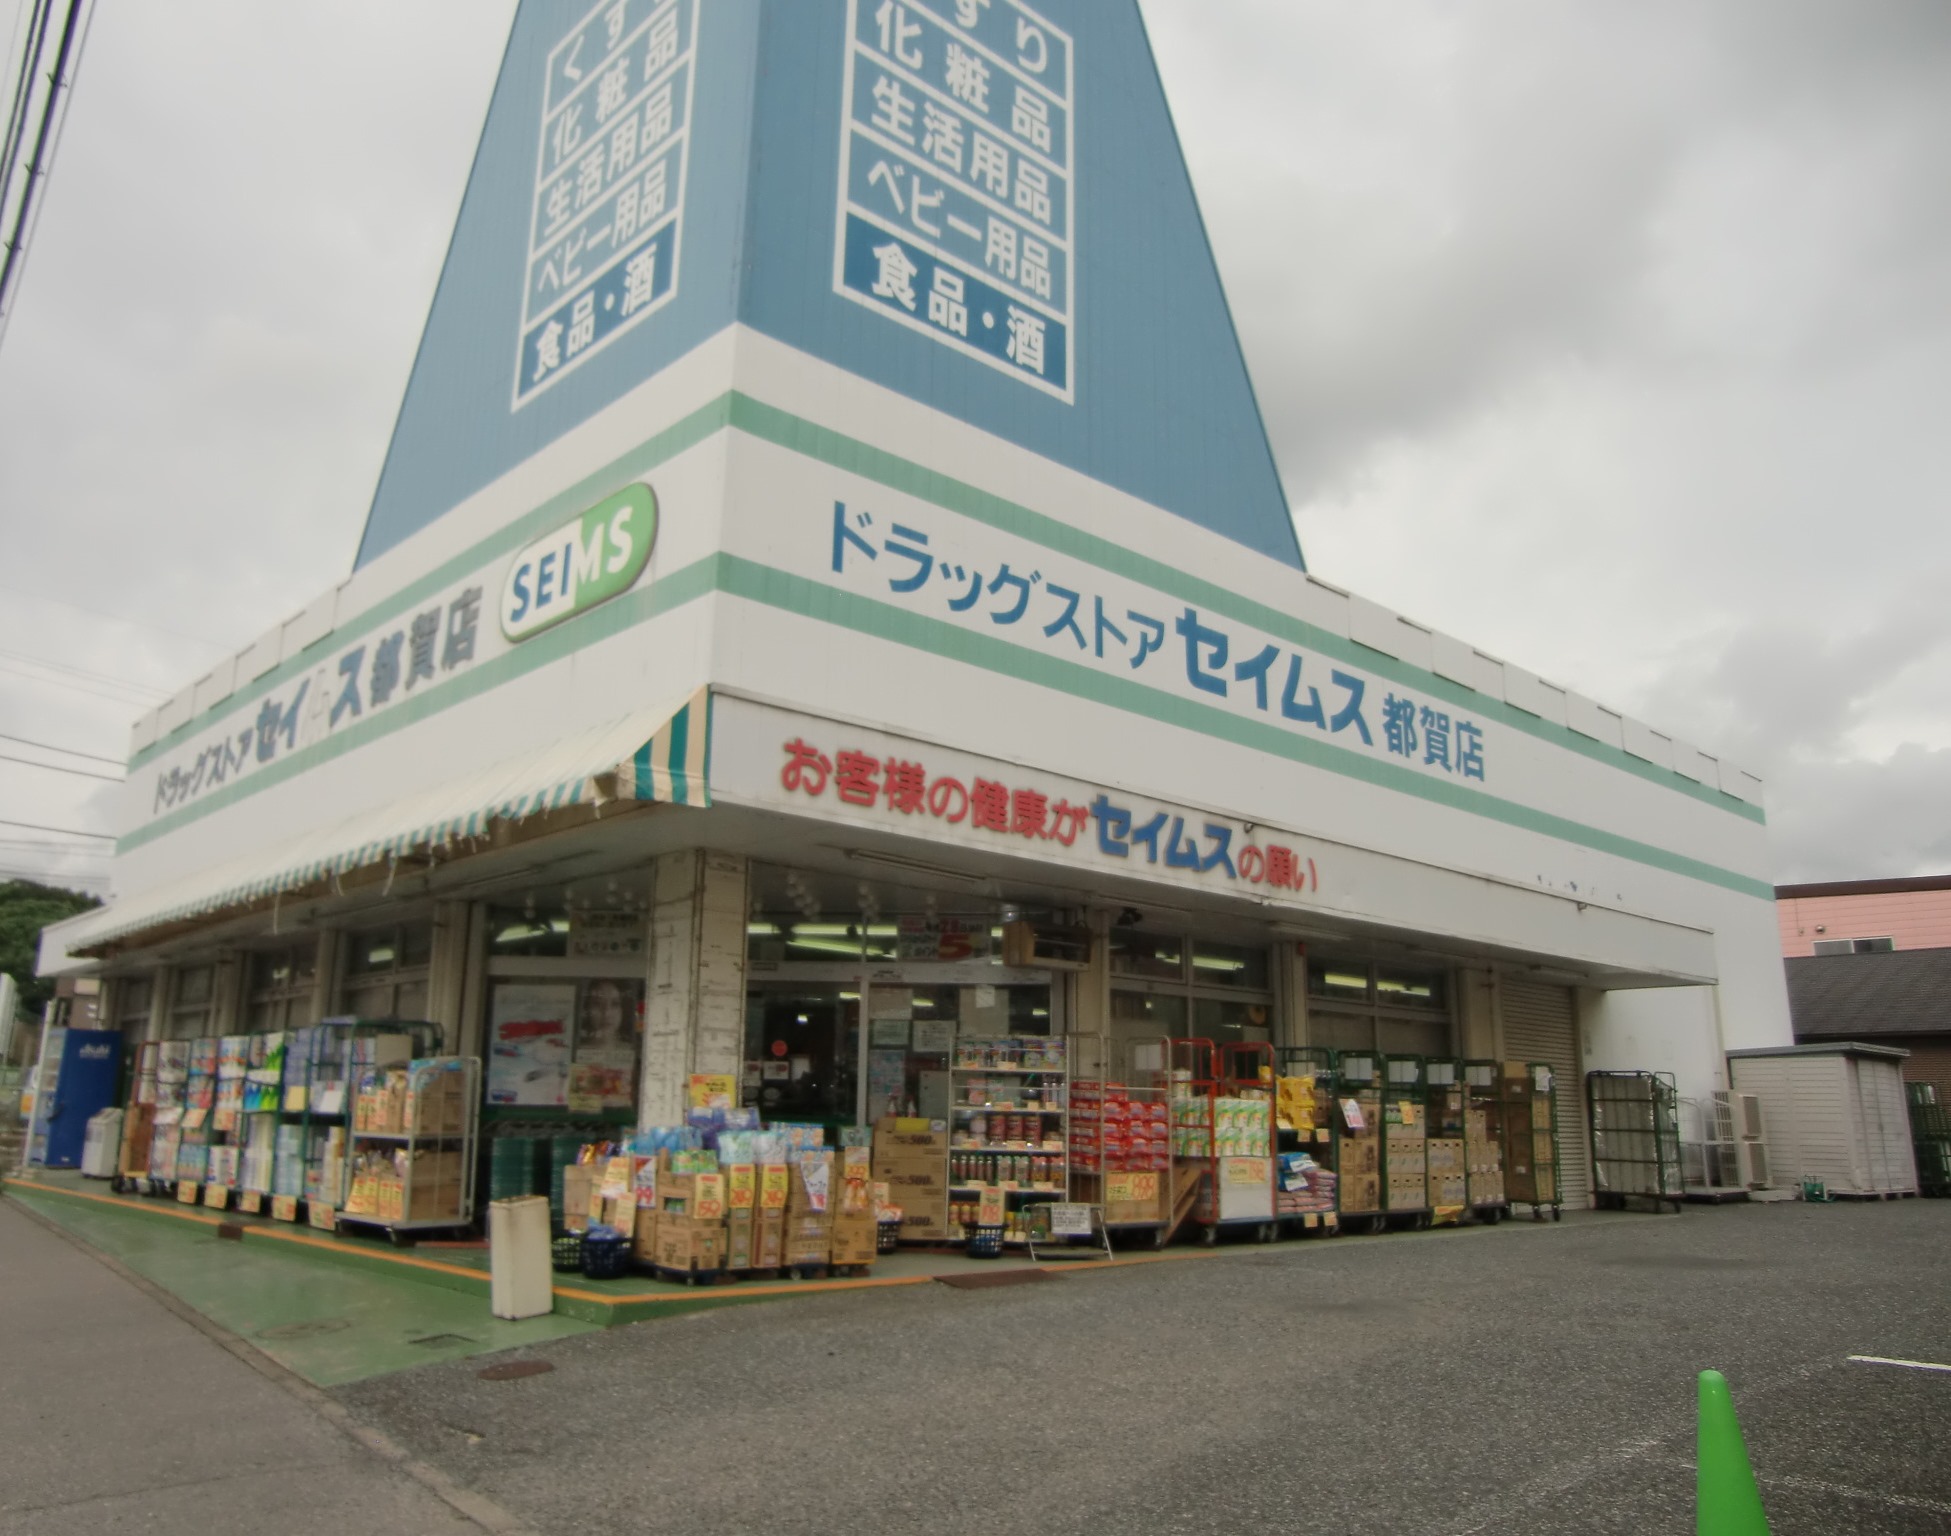 Dorakkusutoa. Drag Seimusu Tsuga shop 271m until (drugstore)